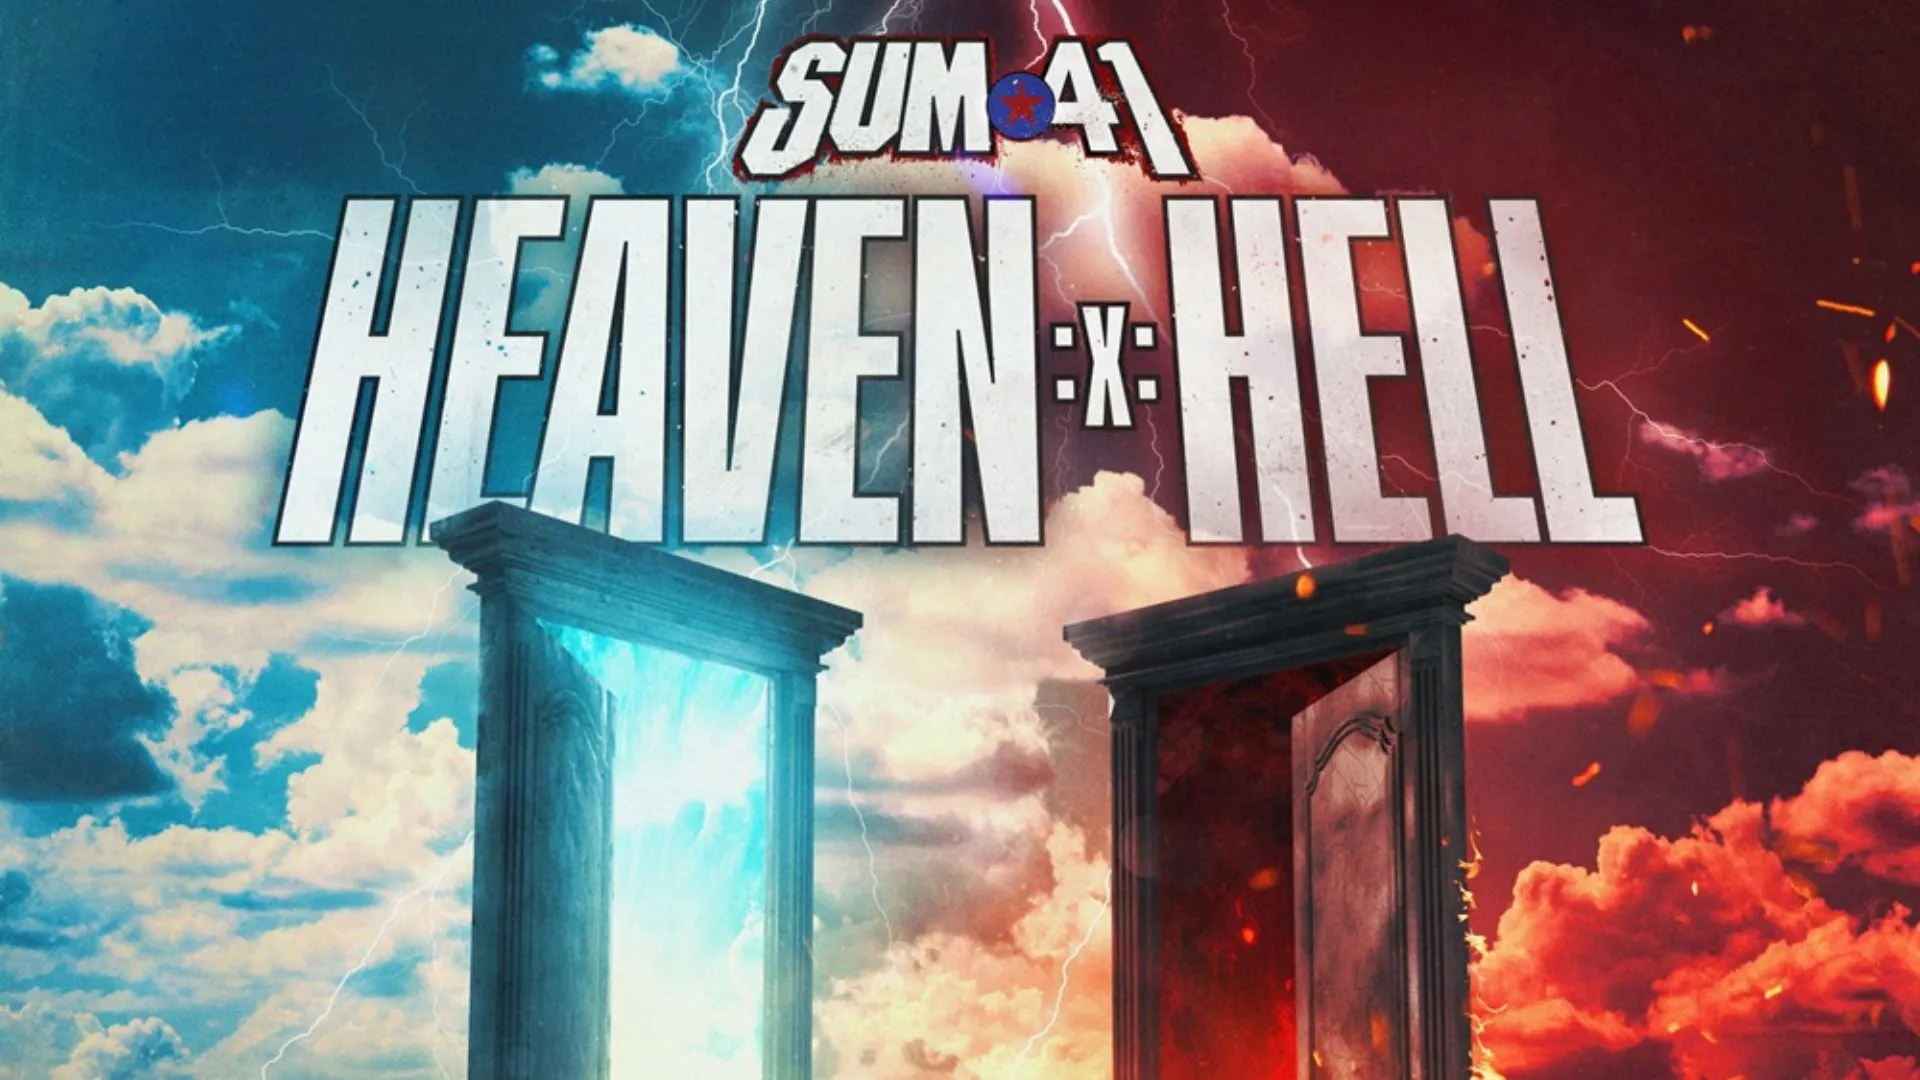 Pochette de l'album "Heaven :x: Hell" de Sum41